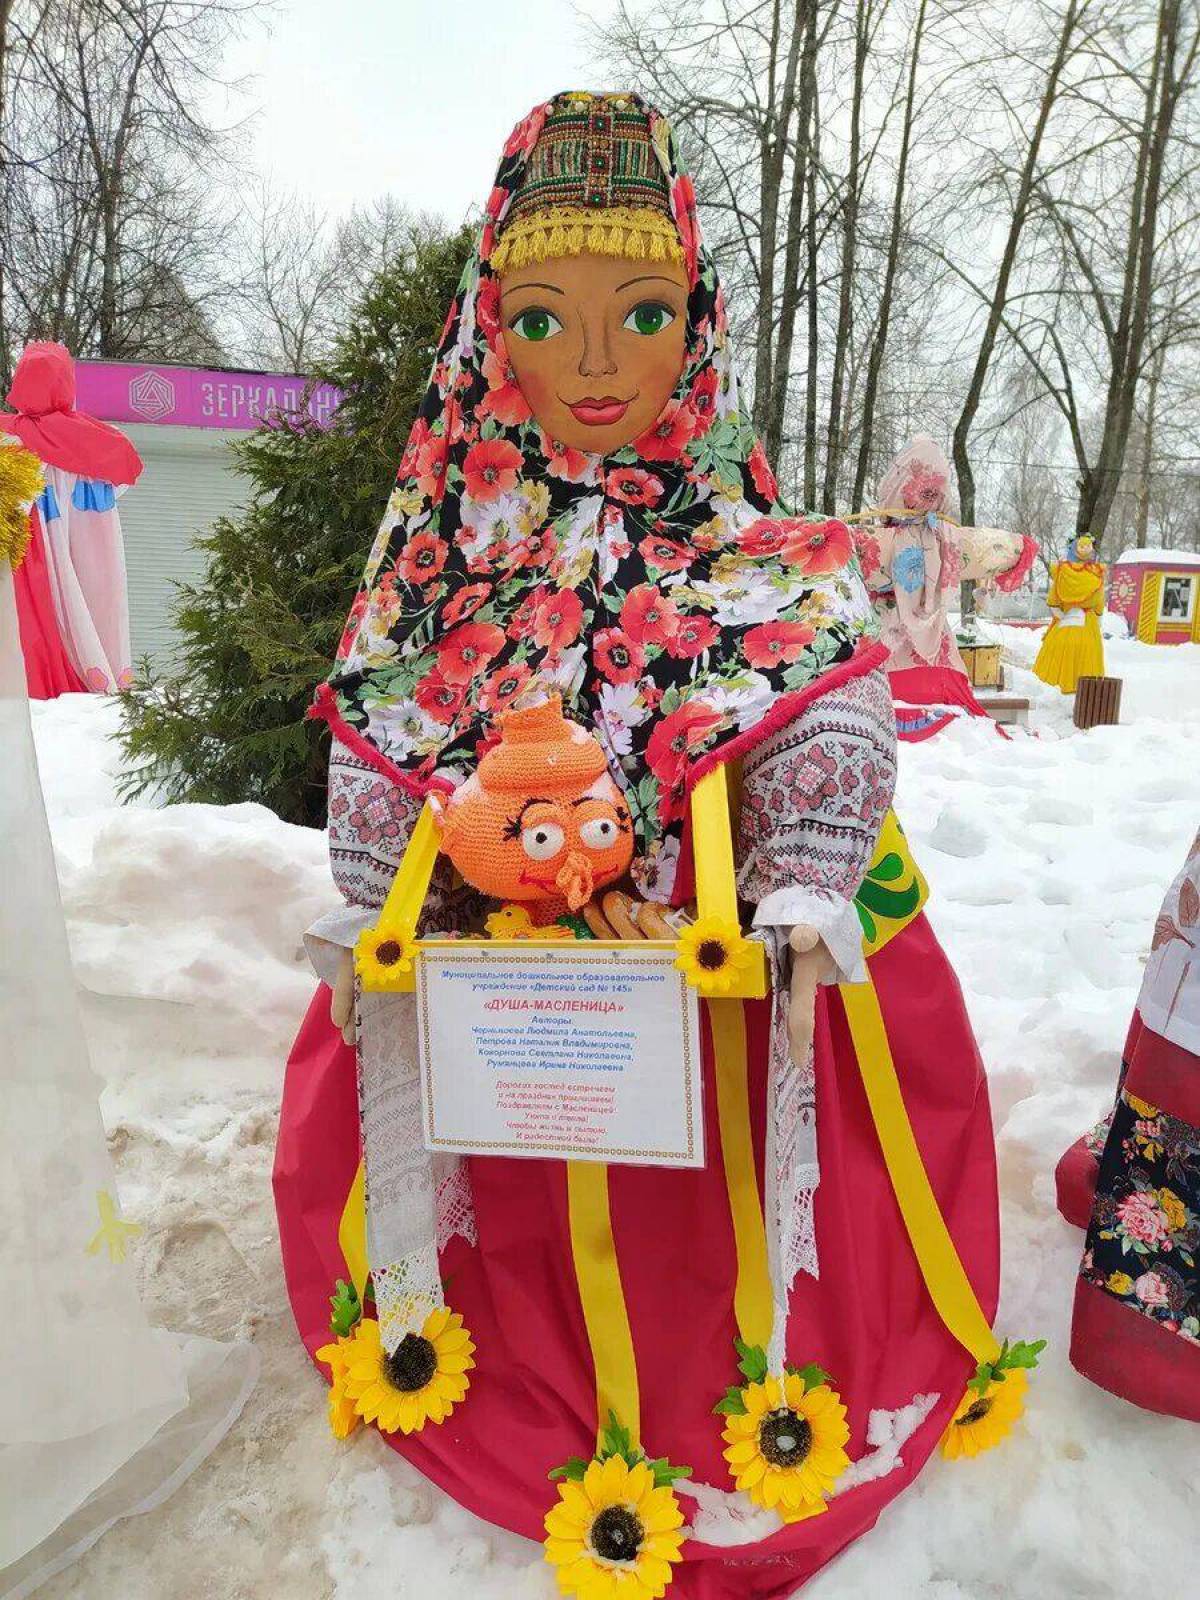 Кукла на масленицу в садик. Конкурс масленичных кукол 2018 Ярославль. Выставка масленичных кукол Ярославль. Масленичная кукла маслена. Выставка масленичных кукол.